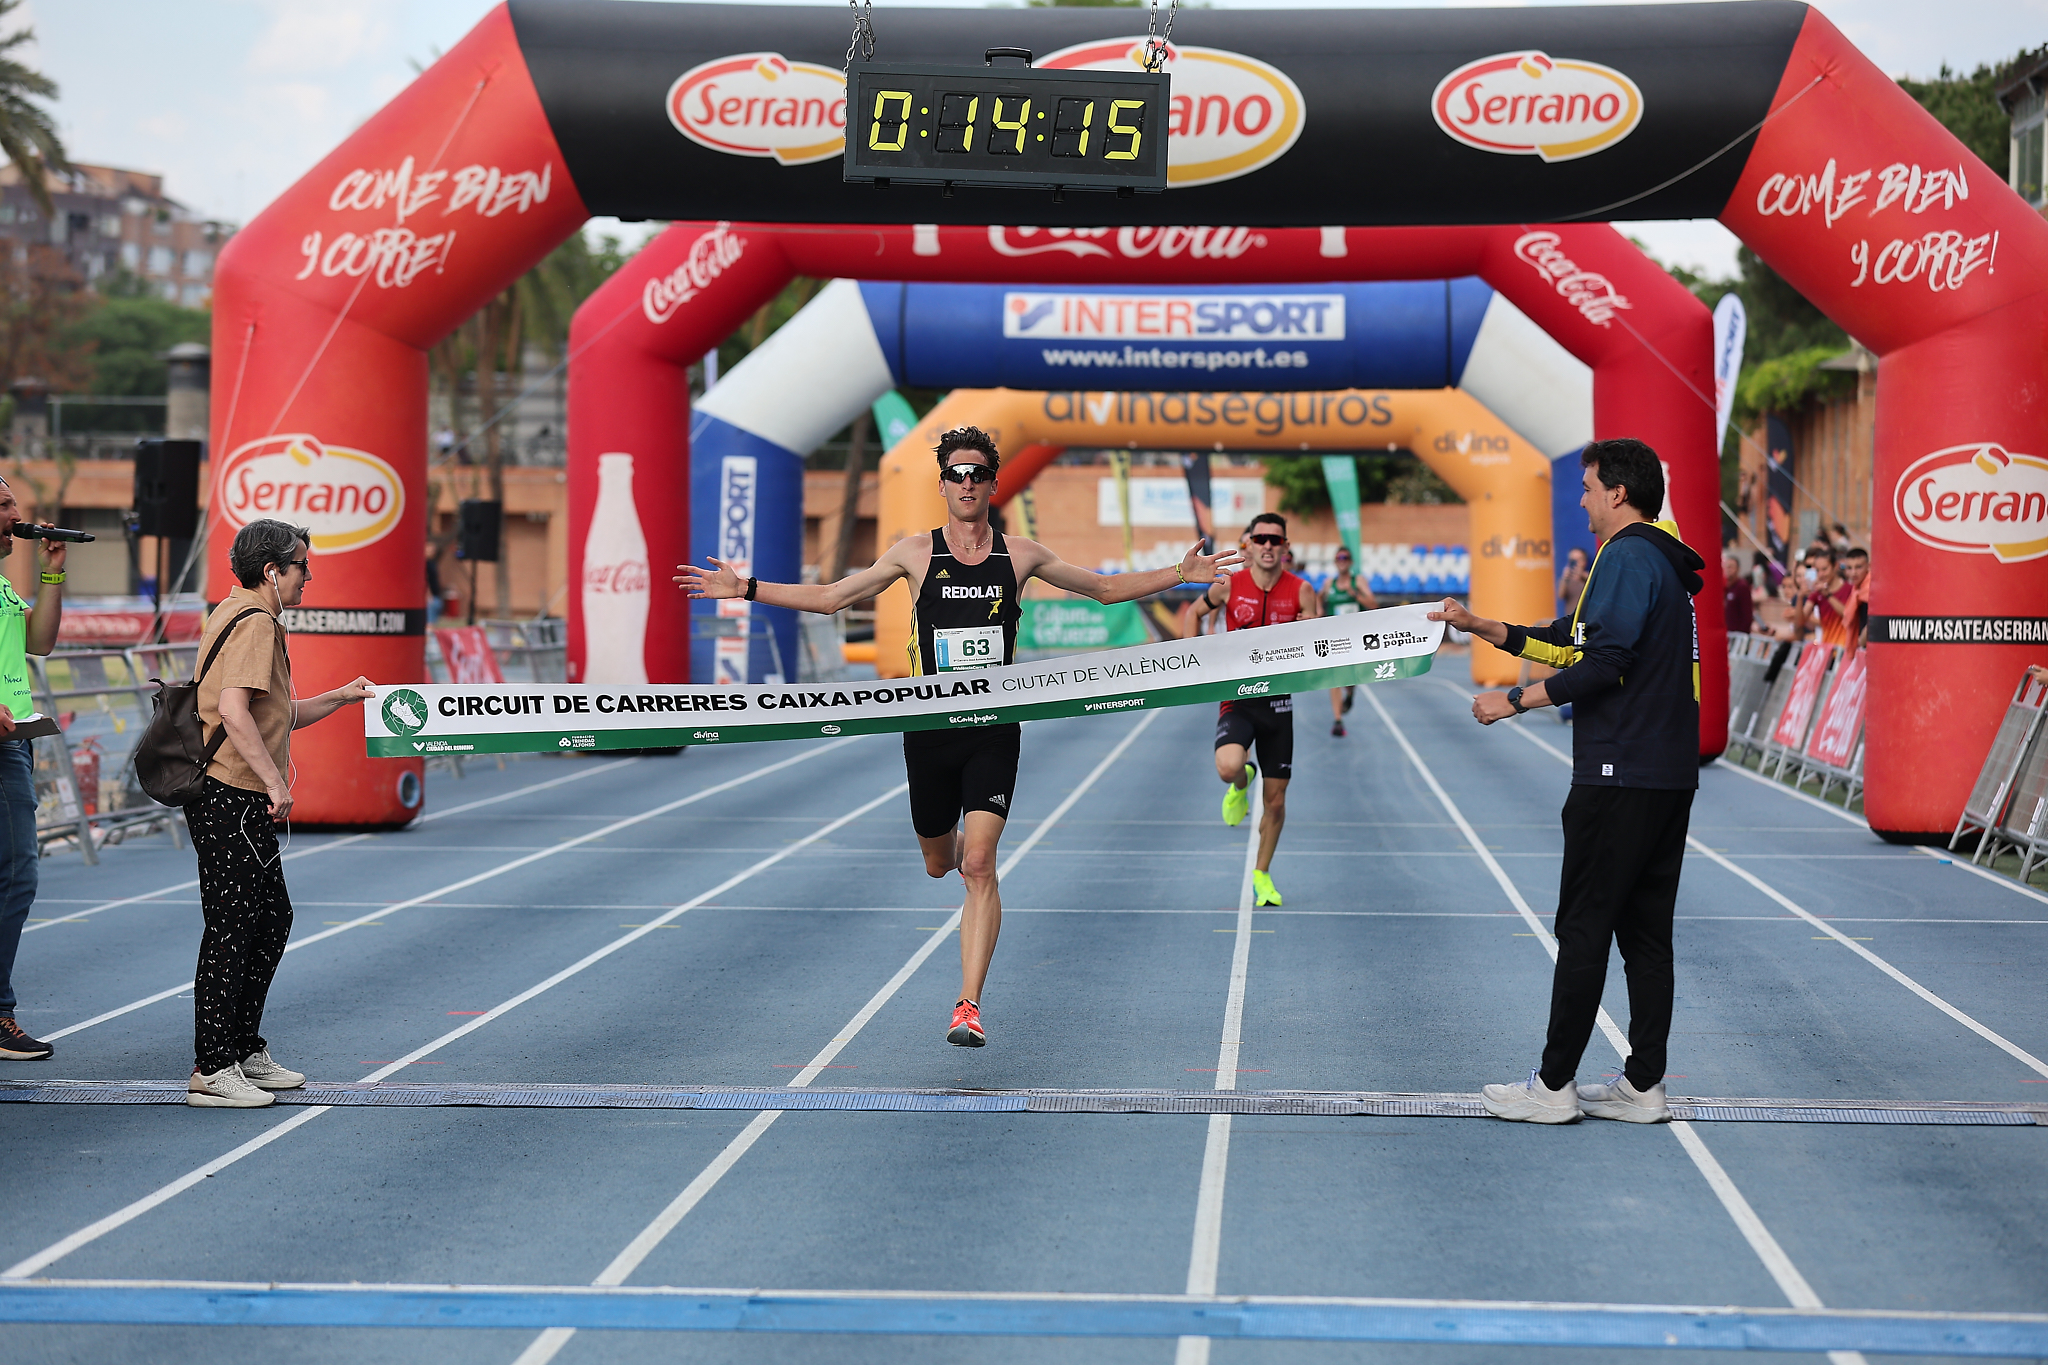 El campió d'Espanya de 1.500, Enrique Herreros, ha aconseguit la victòria masculina amb un temps de 14:15, récord també de la seua categoría.